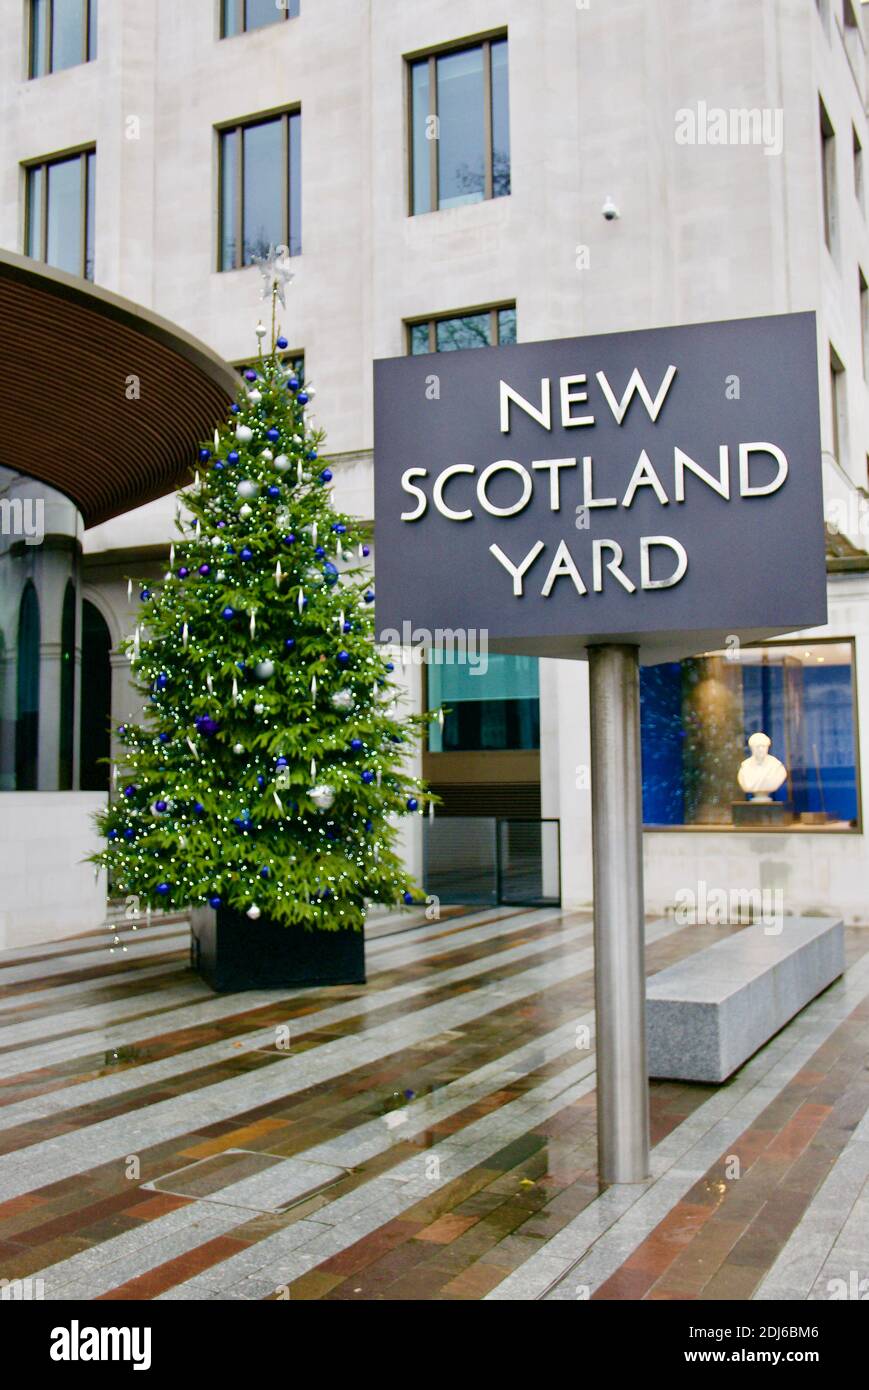 Metropolitan Police Annual Christmas Tree Appeal mit Weihnachtsbaum vor New Scotland Yard (Hauptsitz der Met), London, Großbritannien gestartet. Stockfoto